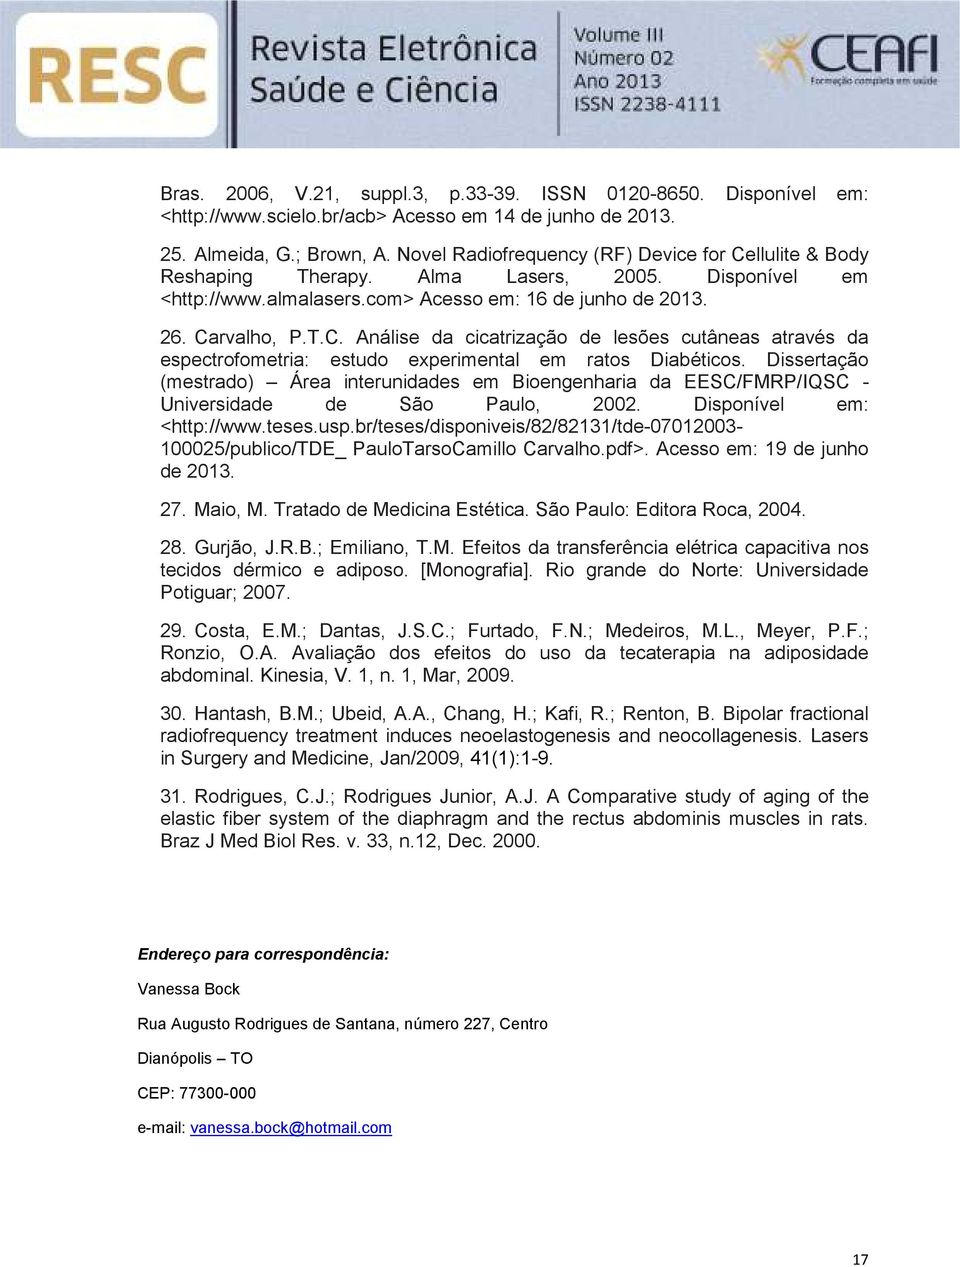 Dissertação (mestrado) Área interunidades em Bioengenharia da EESC/FMRP/IQSC - Universidade de São Paulo, 2002. Disponível em: <http://www.teses.usp.